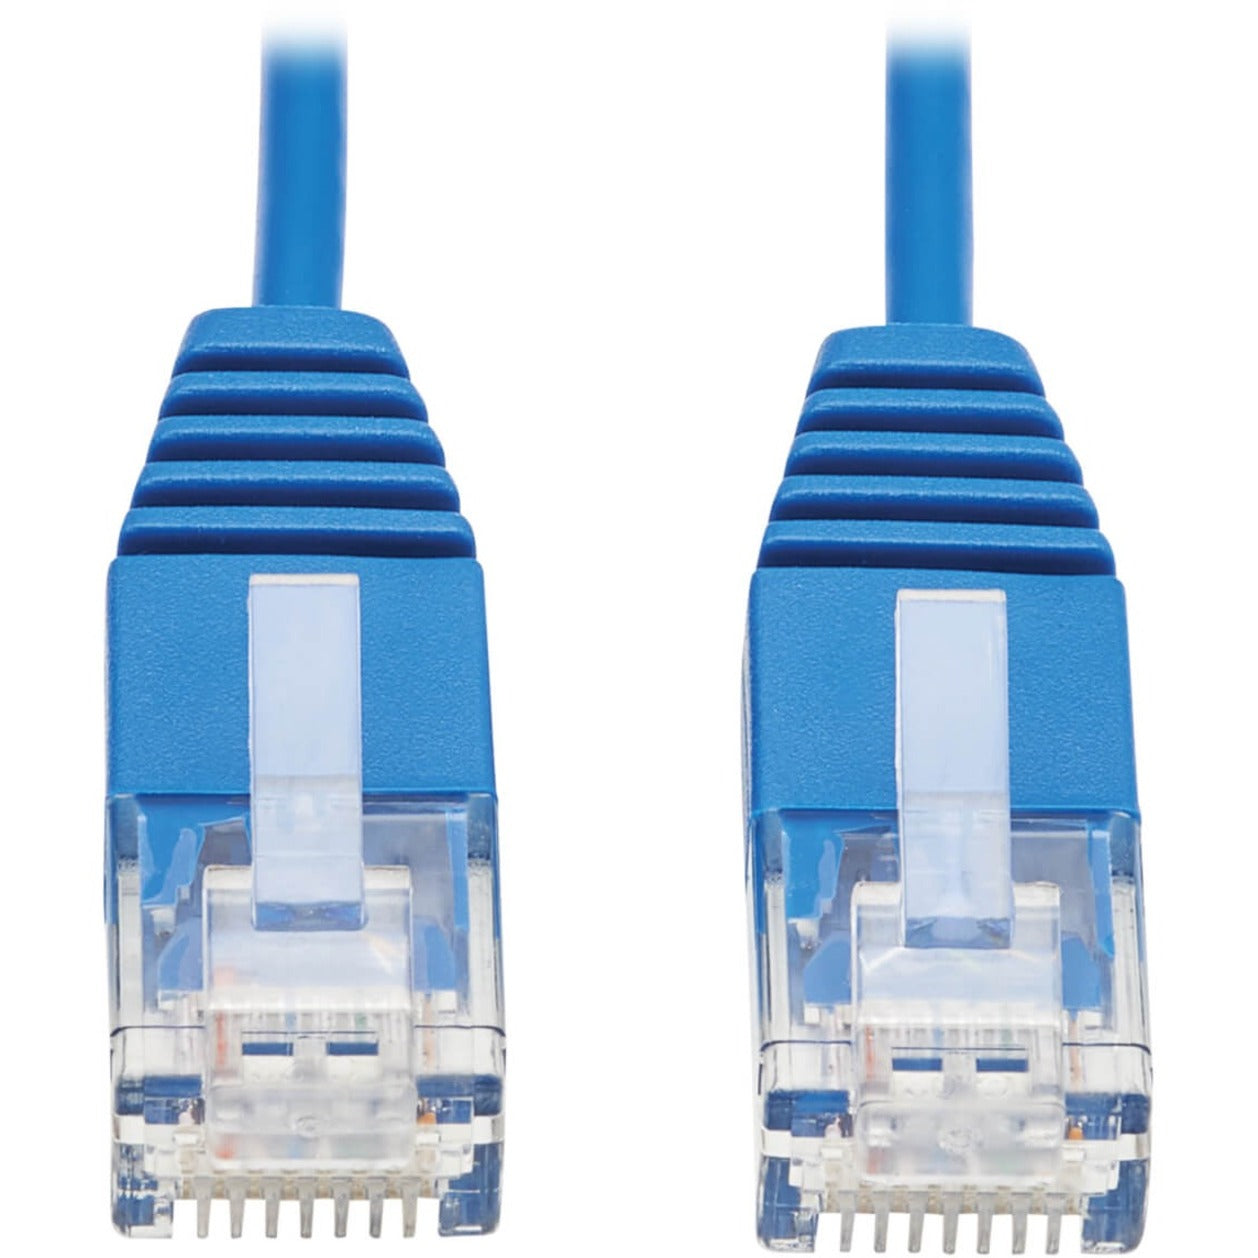 Tripp Lite N200-UR01-BL Cat6 Ultra-Slank Ethernetkabel Blauw 1 ft.